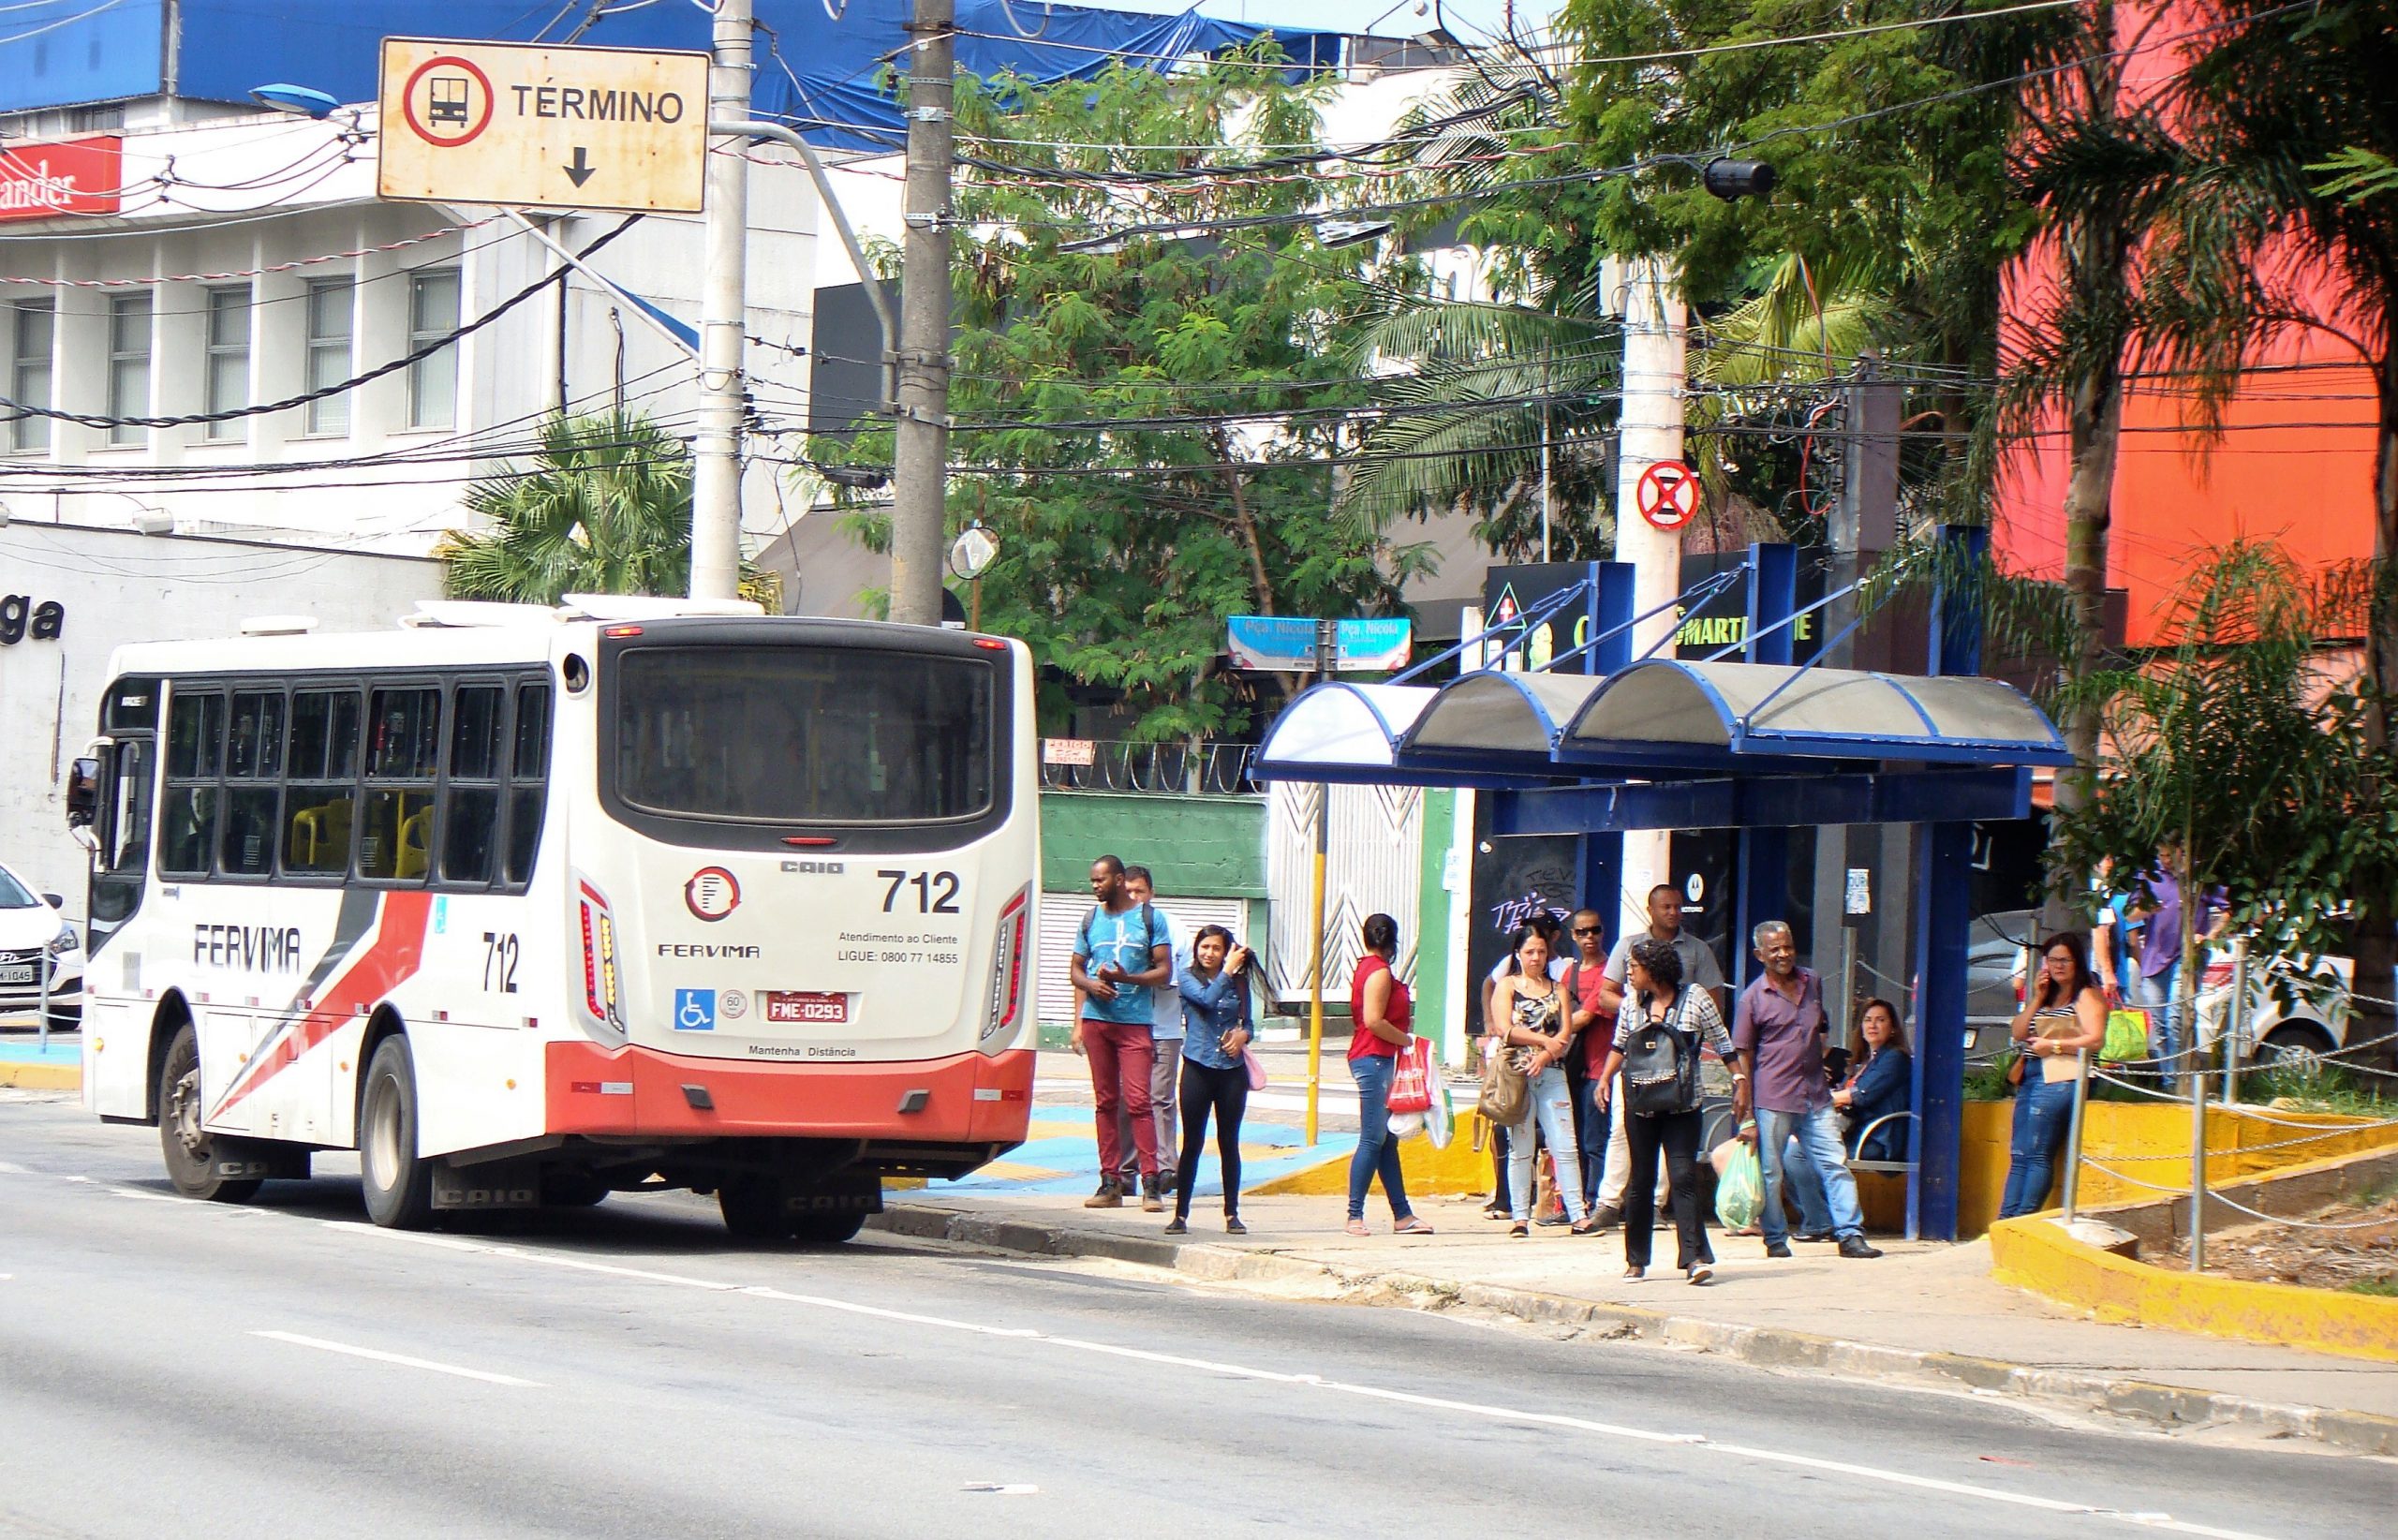 Ônibus da Viação Fervima em um ponto de ônibus localizado na Praça Nicola Vivilecchio, sentido centro, na cidade de Taboão da Serra - SP.